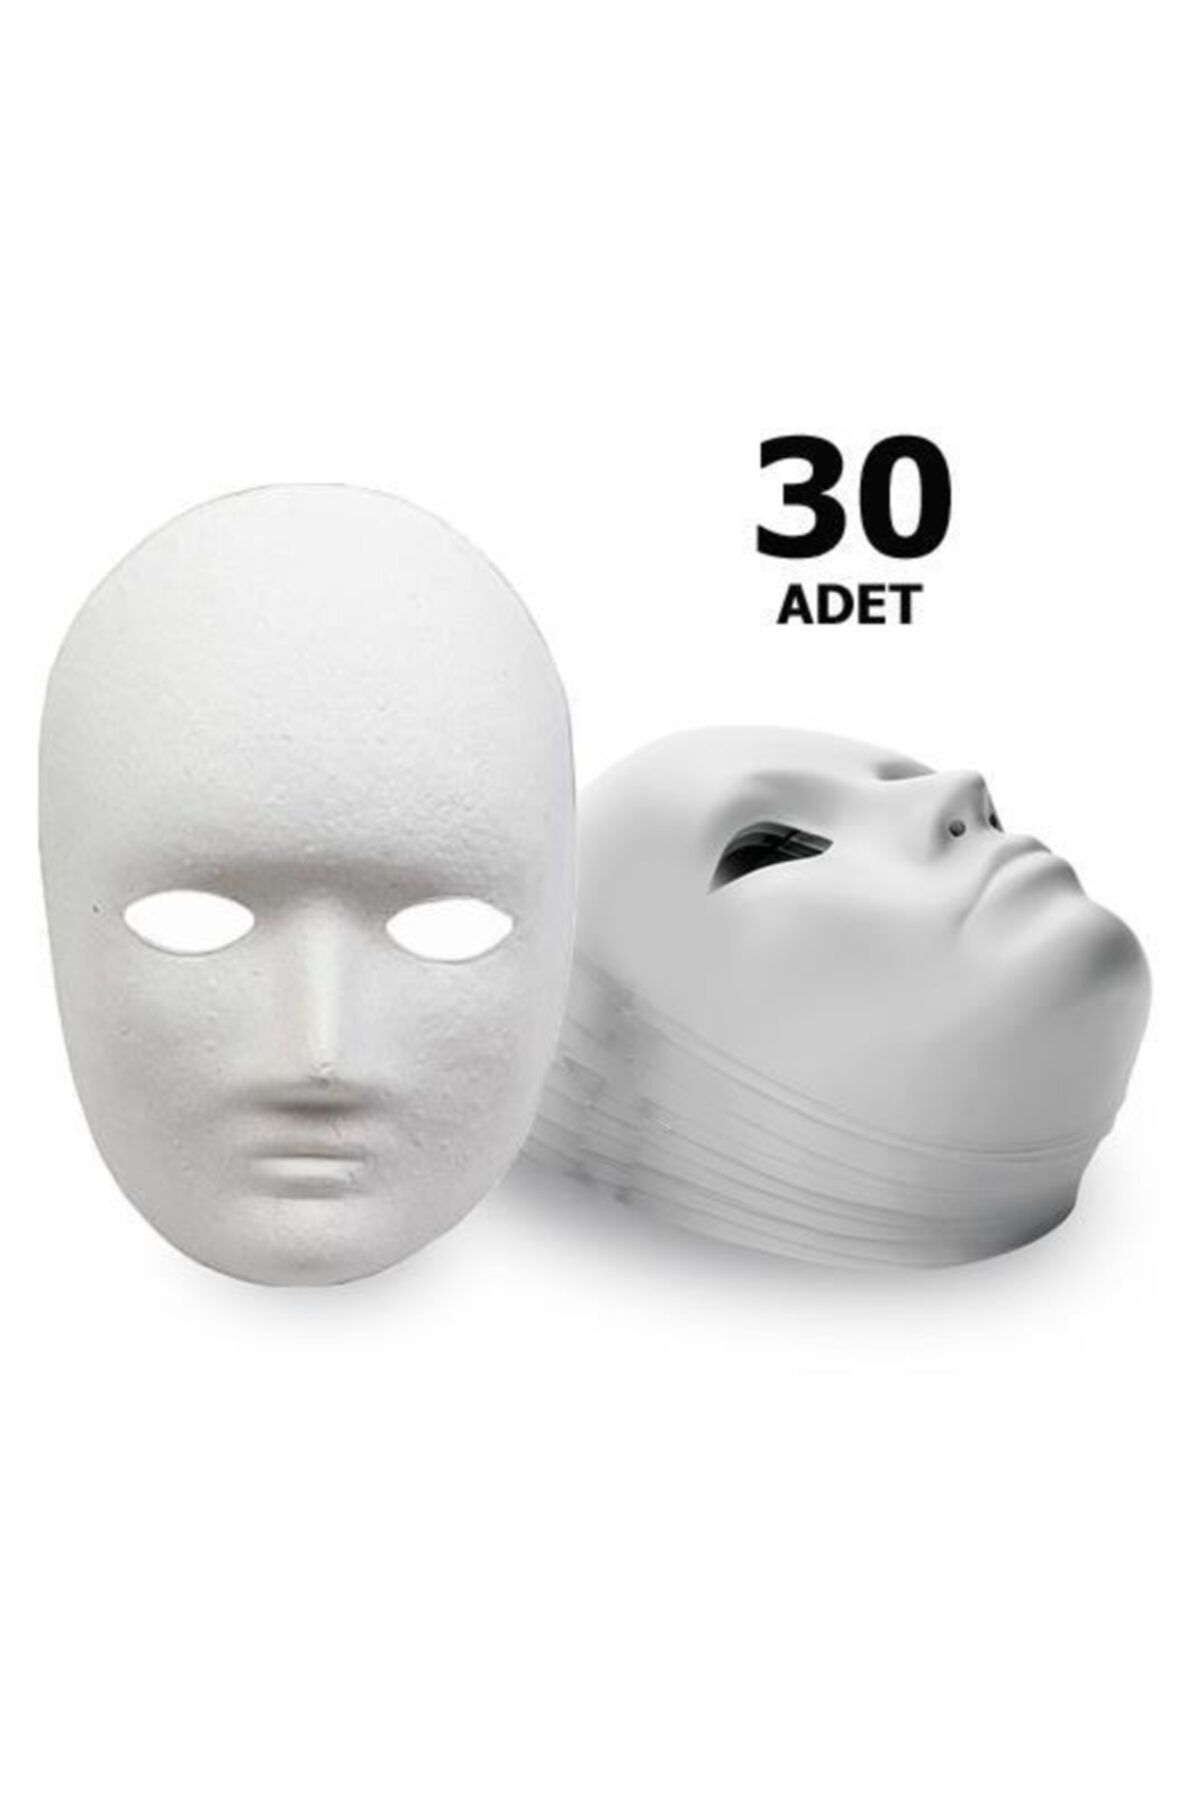 Hobialem 30 Adet, Karton Maske, Boyanabilir Eğitici Maske Boyama, Etkinlik Ve Hobi Maskesi